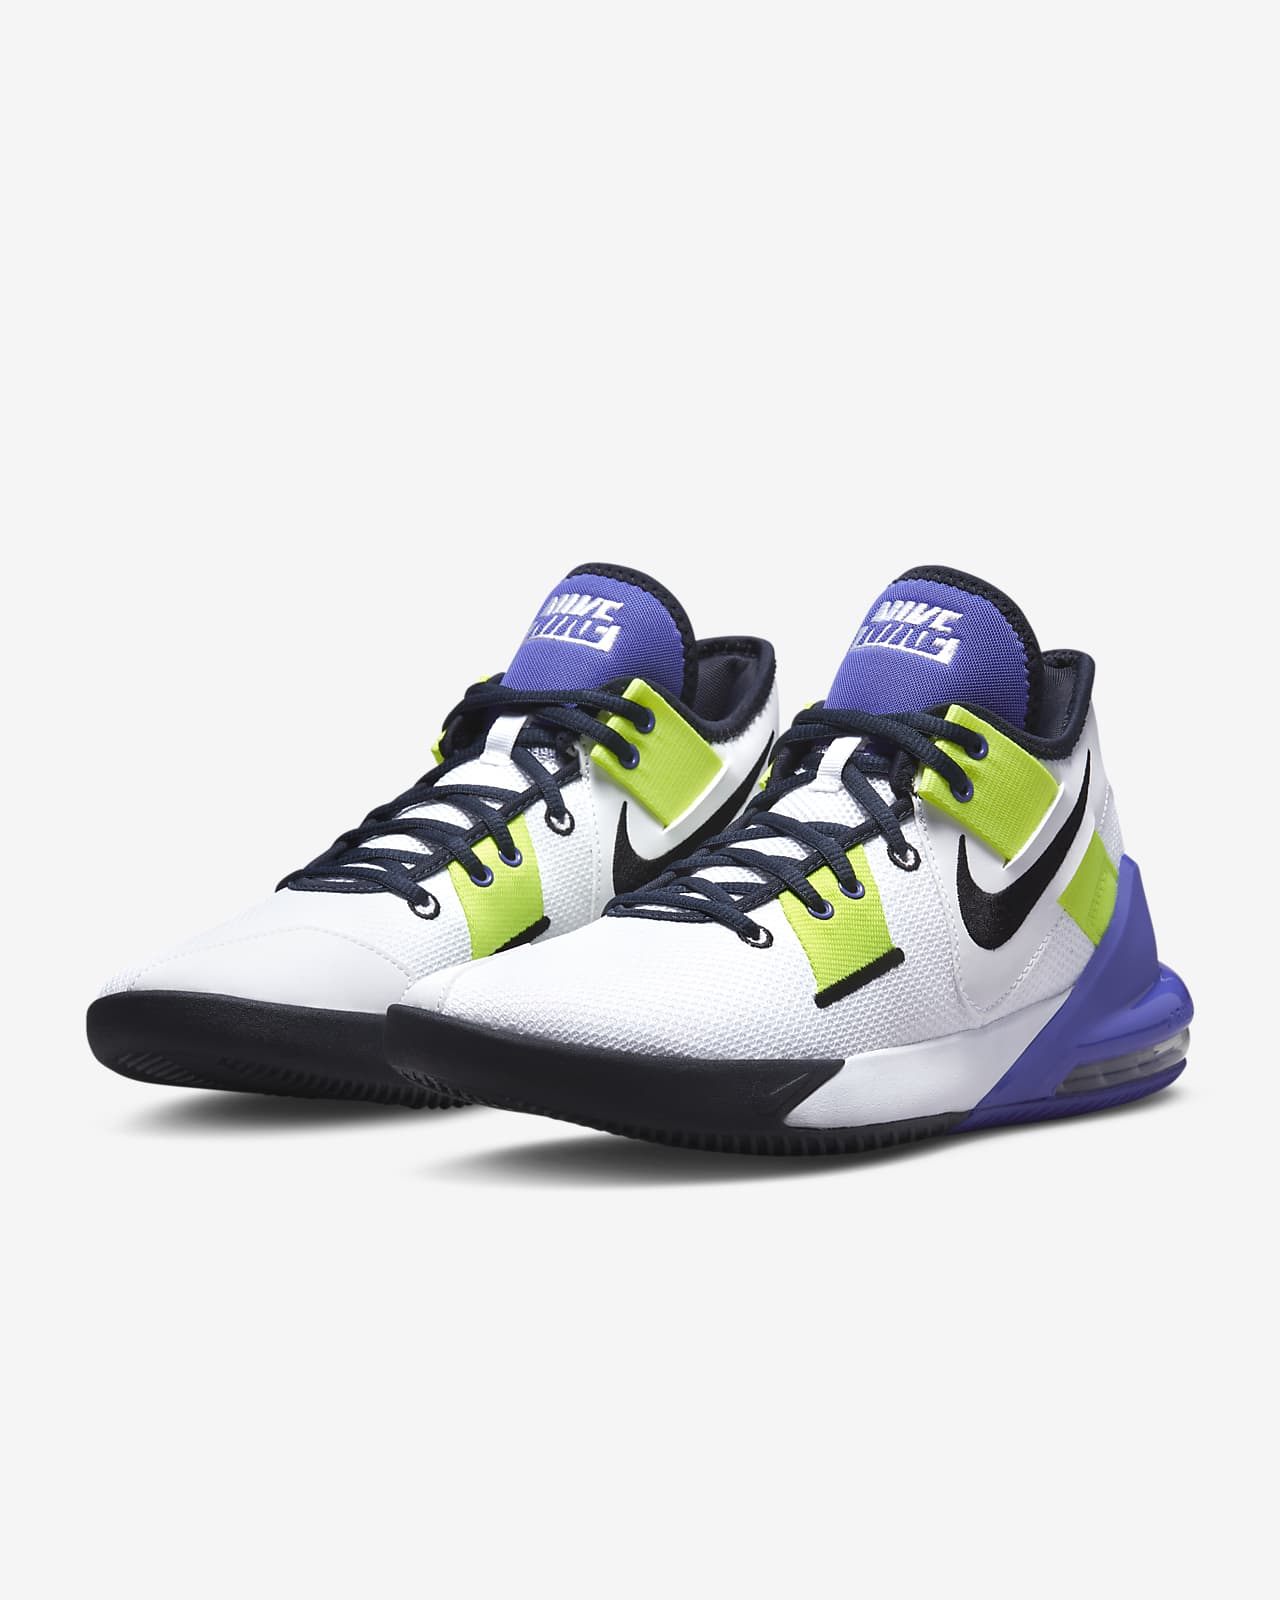 Calzado de básquetbol Nike Air Max Impact 2 كاديلاك اسكاليد